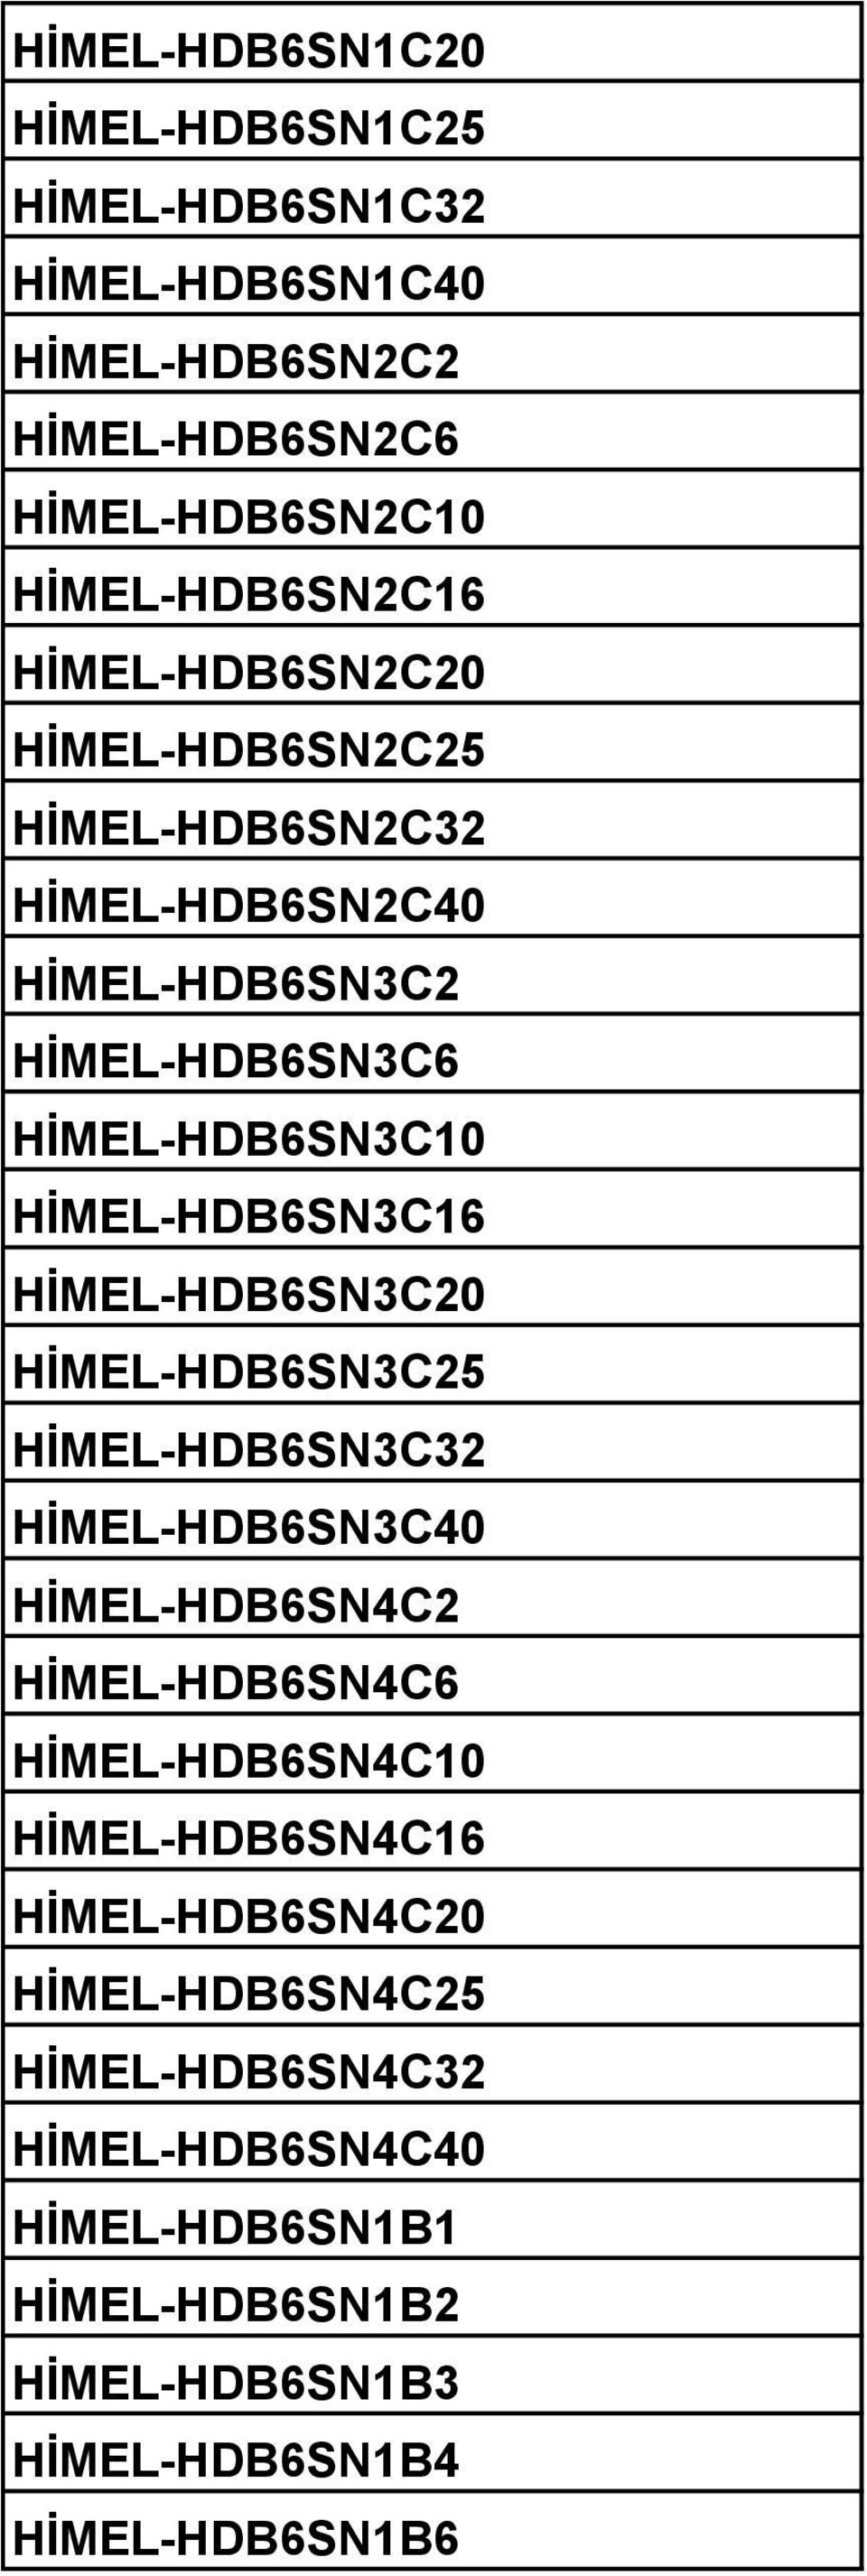 HİMEL-HDB6SN3C20 HİMEL-HDB6SN3C25 HİMEL-HDB6SN3C32 HİMEL-HDB6SN3C40 HİMEL-HDB6SN4C2 HİMEL-HDB6SN4C6 HİMEL-HDB6SN4C10 HİMEL-HDB6SN4C16